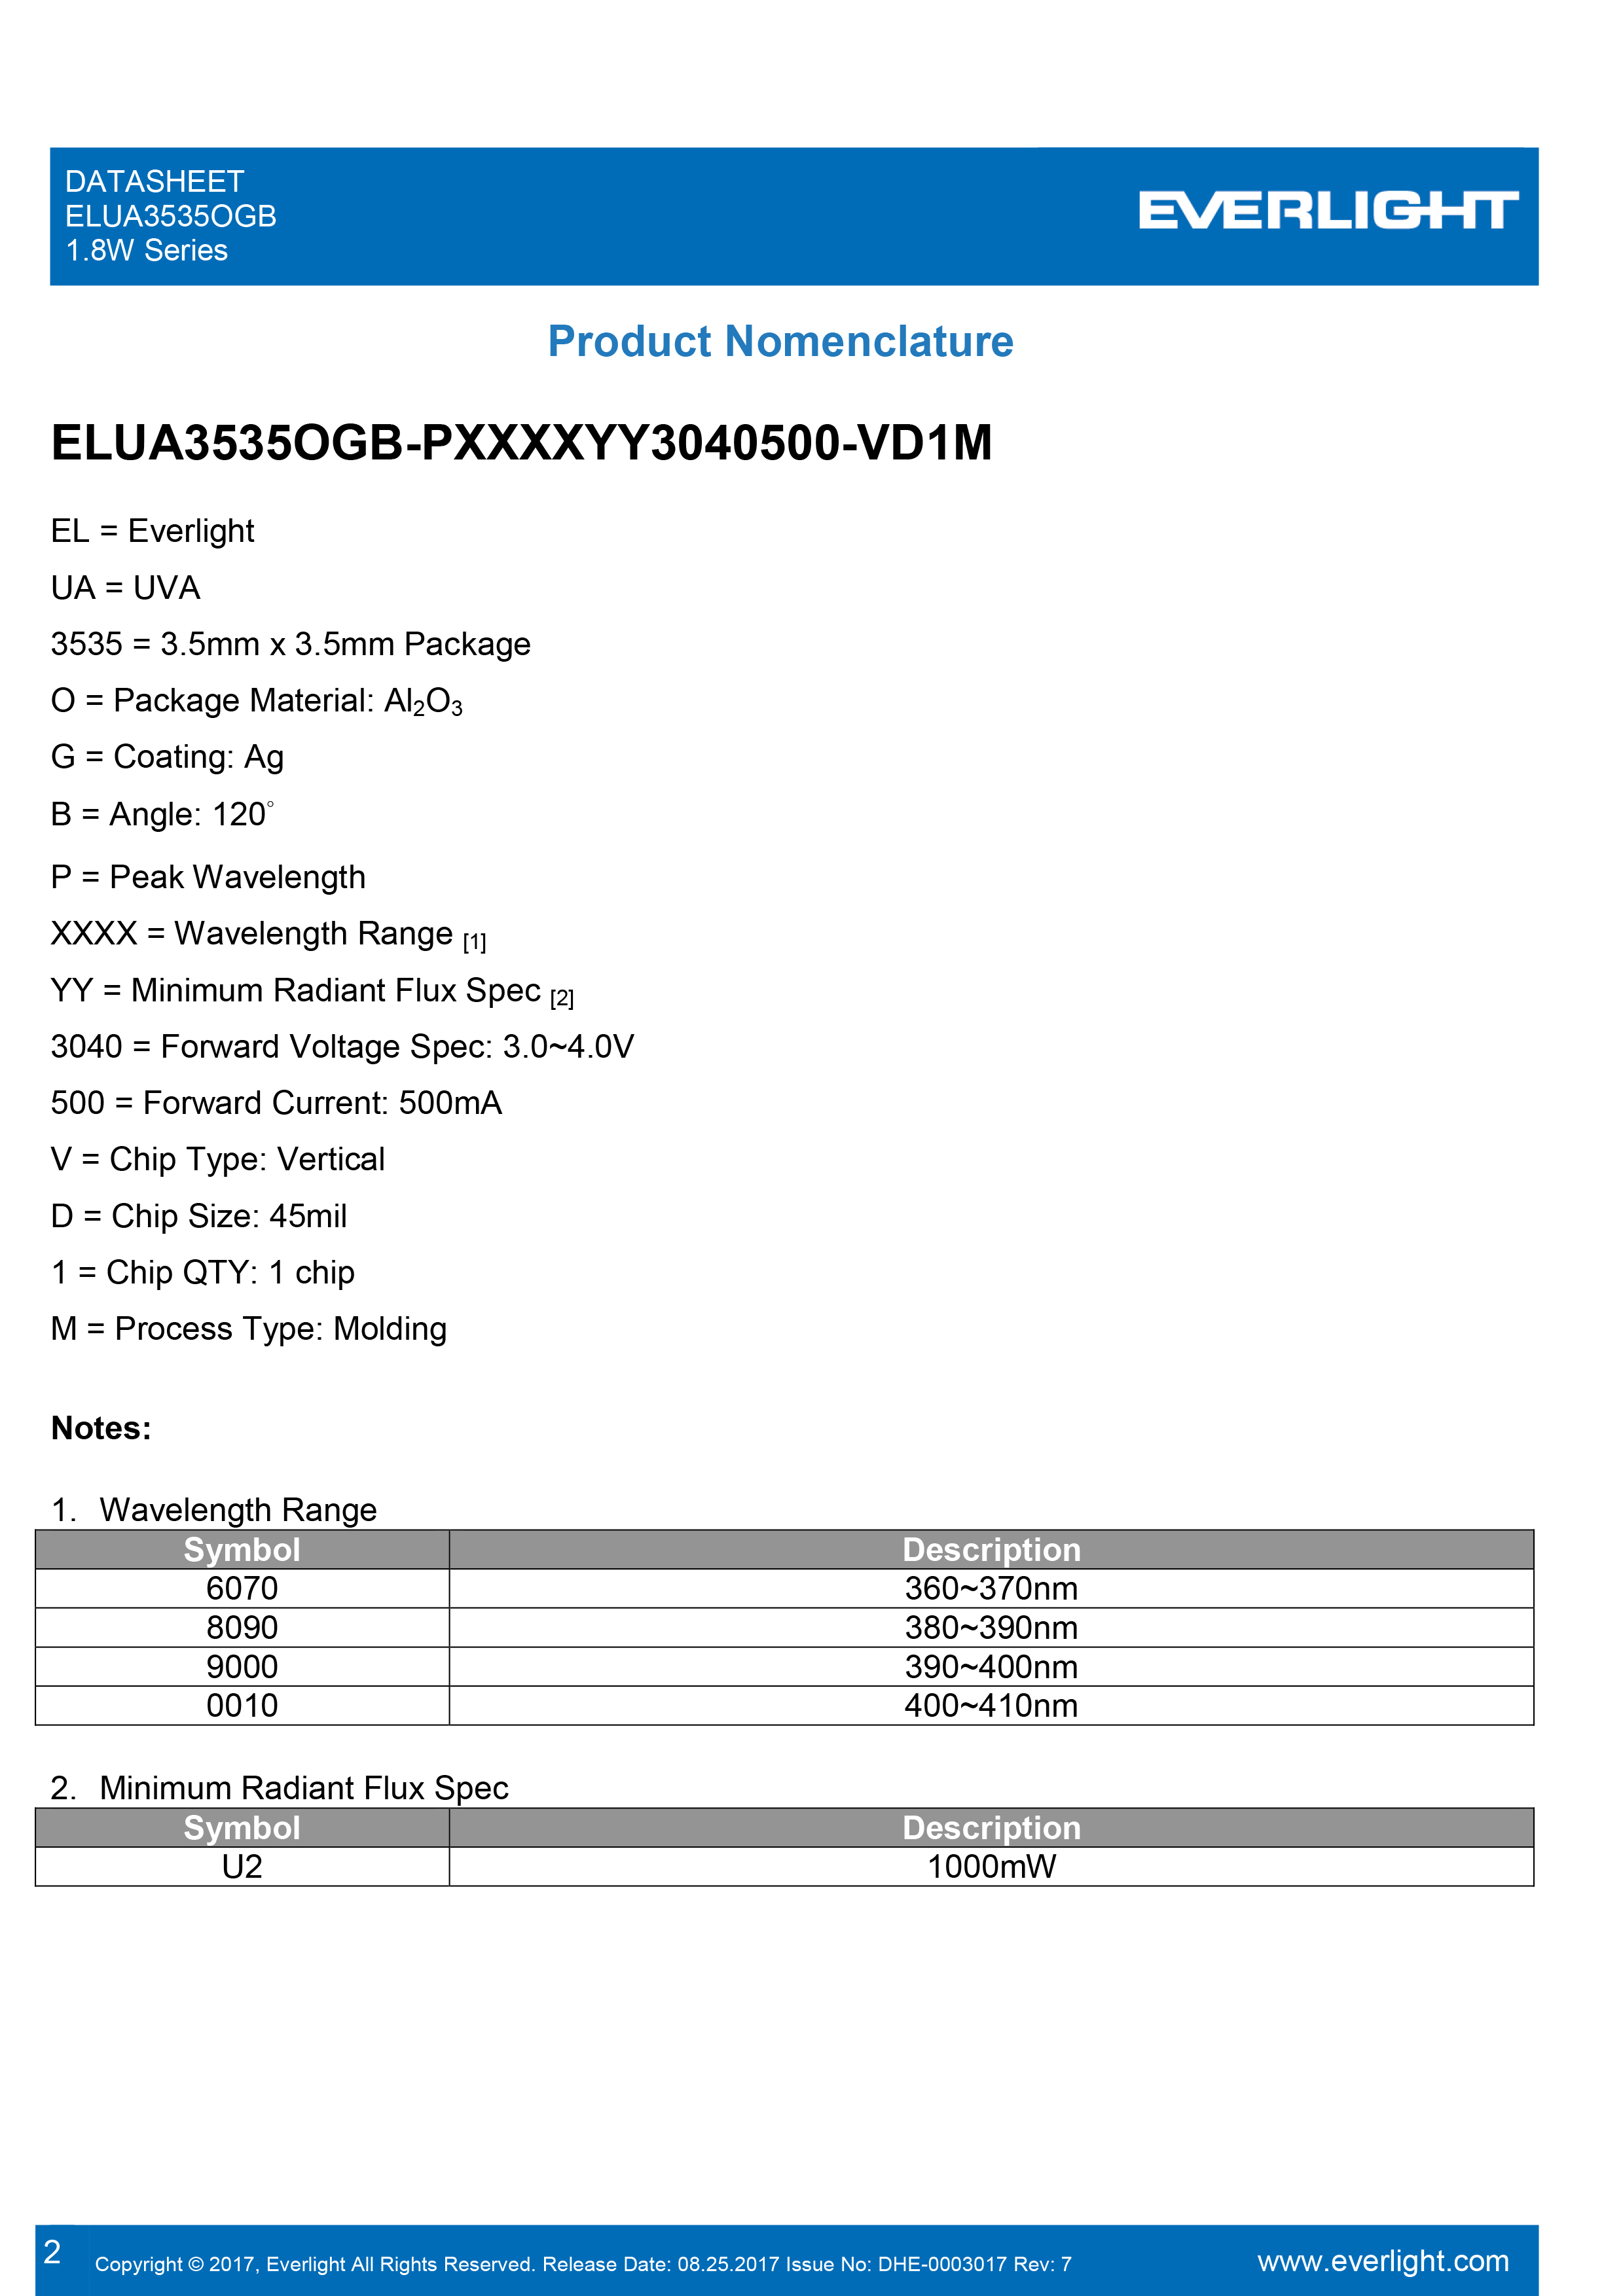 EVERLIGHT SMD1.8W UV LED ELUA3535OGB-P6070U23040500-VD1M  Datasheet